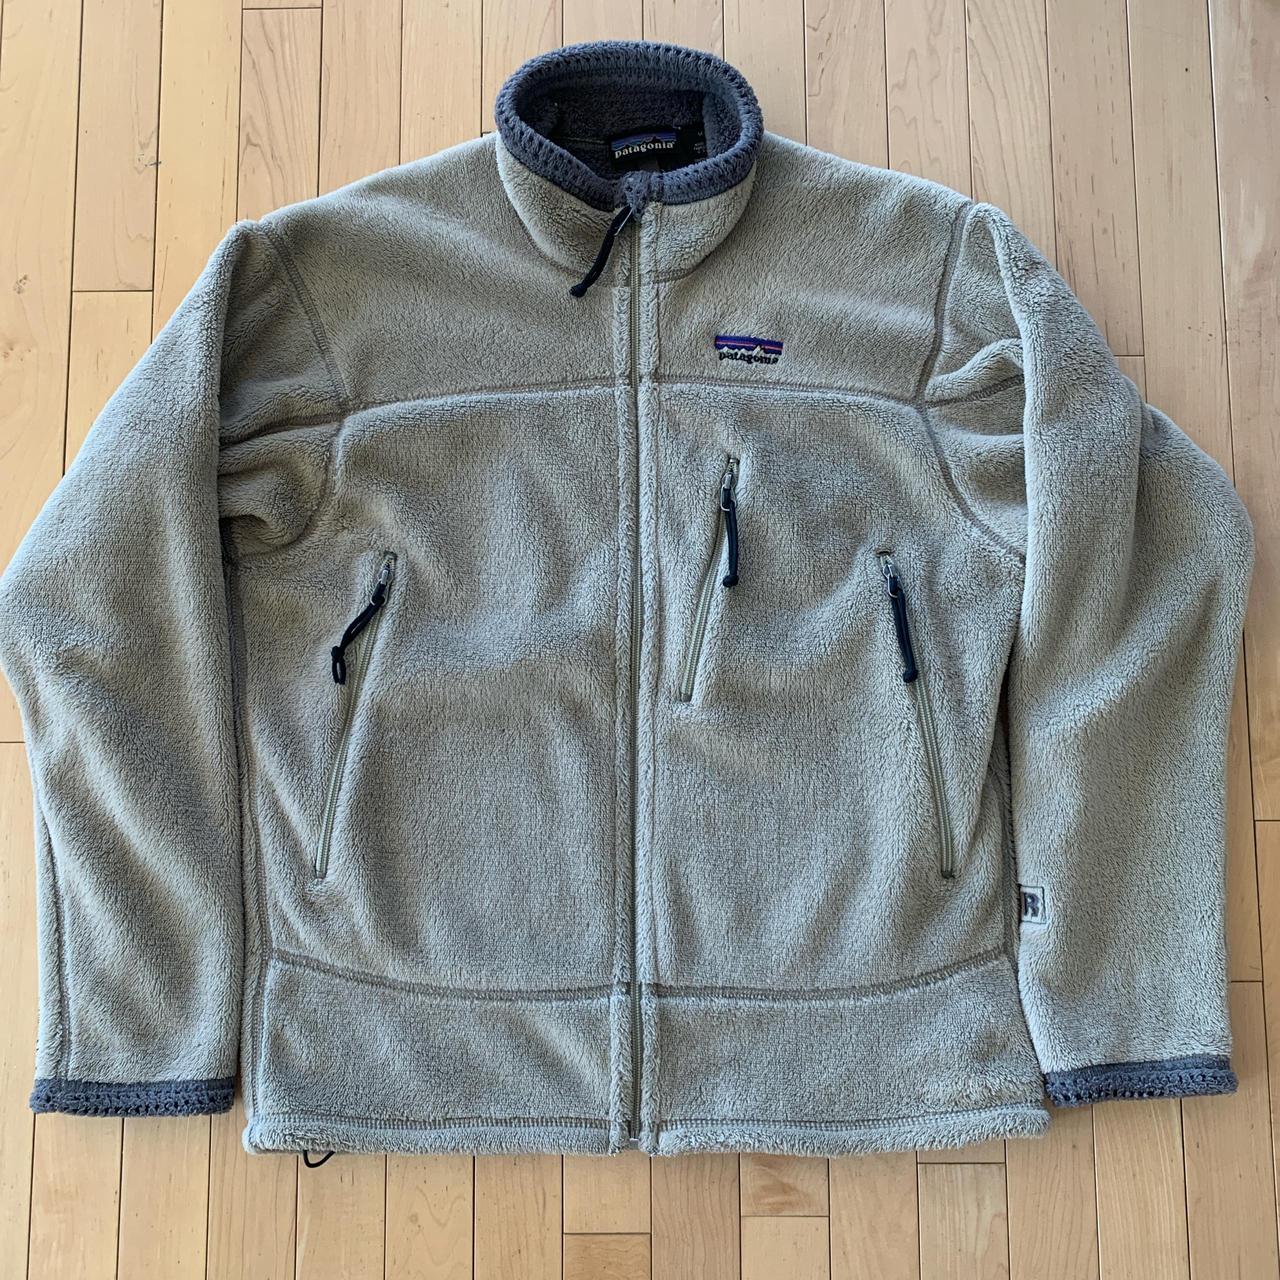 Vintage ‘02 Patagonia R4 Fleece Jacket Perfect... - Depop